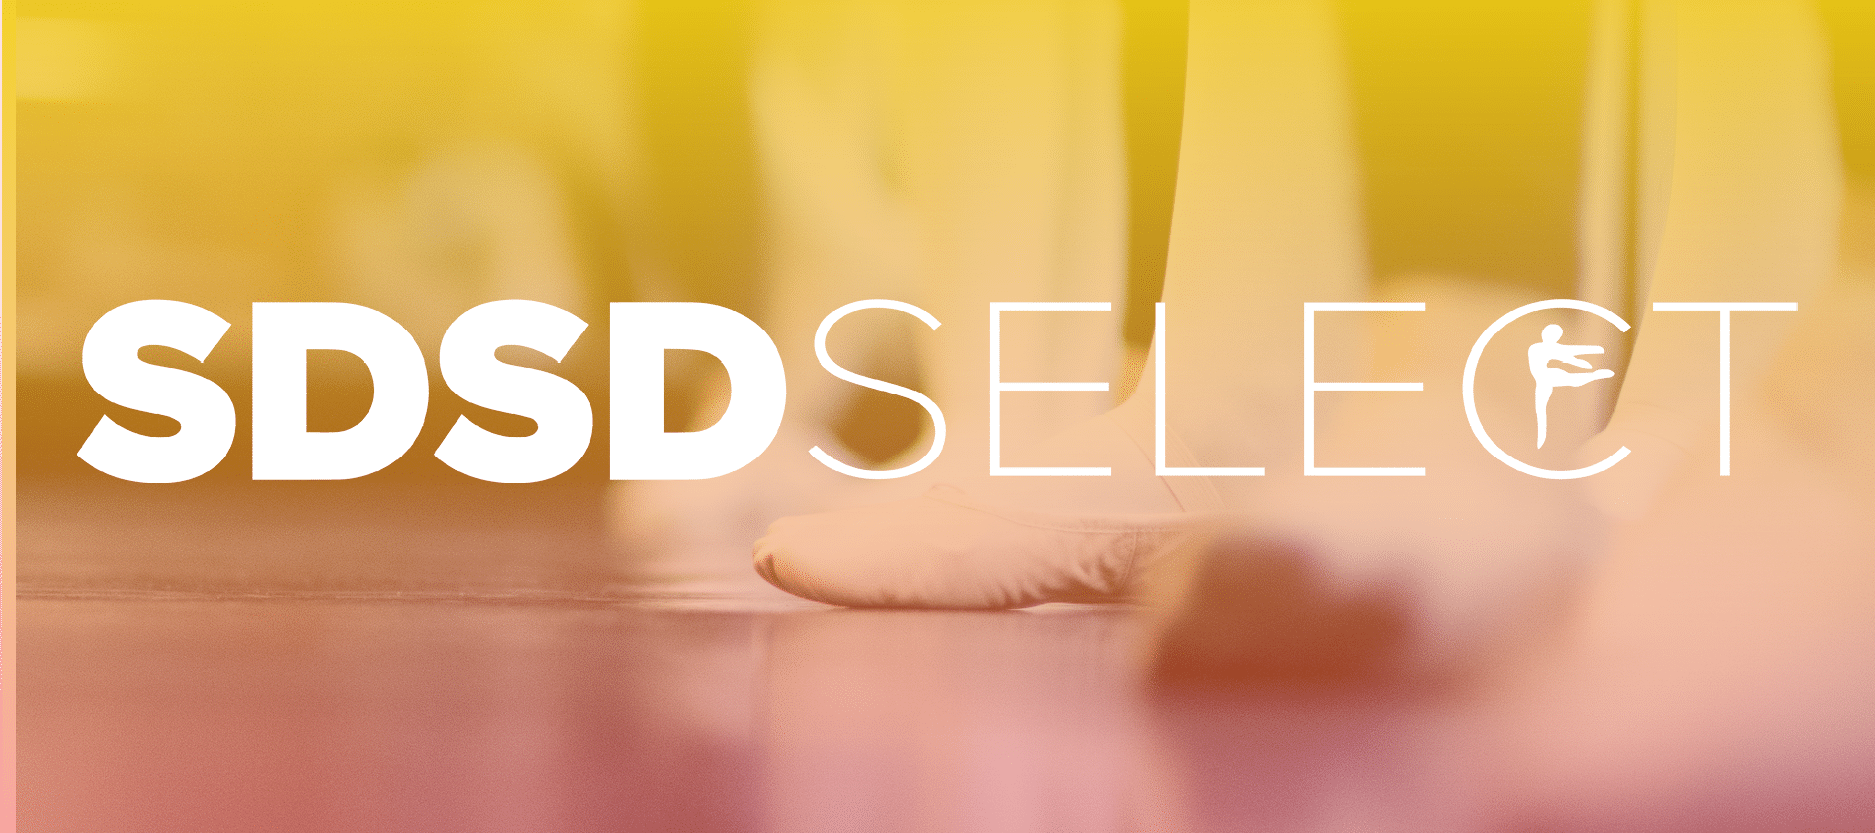 SDSD Crew Logo over ballet dancer's feet